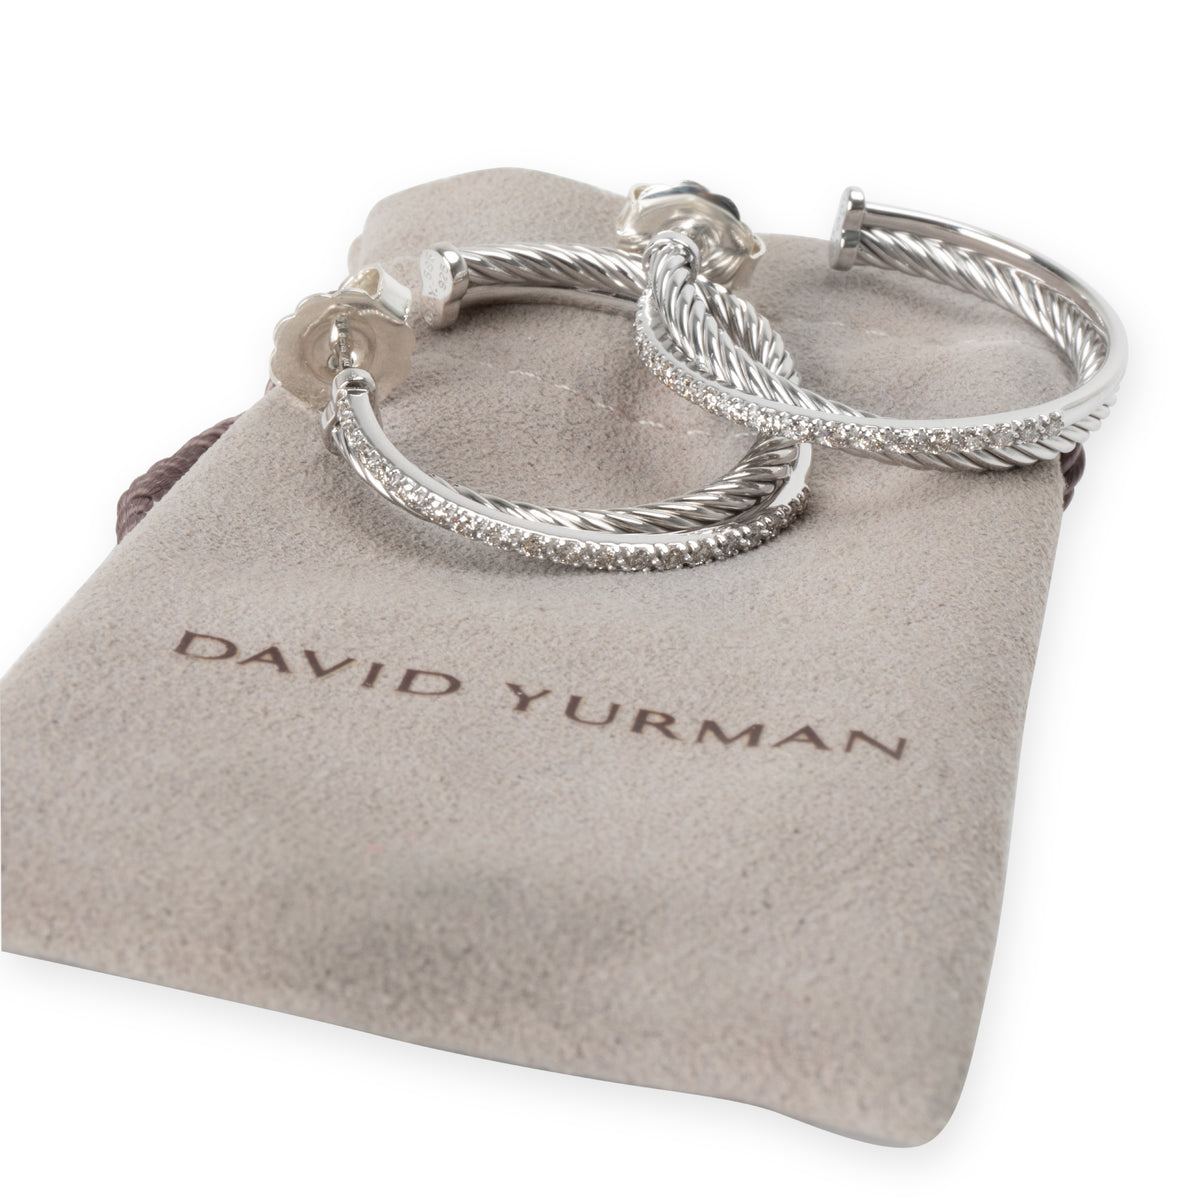 David Yurman Crossover Diamond Hoop Earrings 14K Gold & Sterling Silver 0.40 CTW